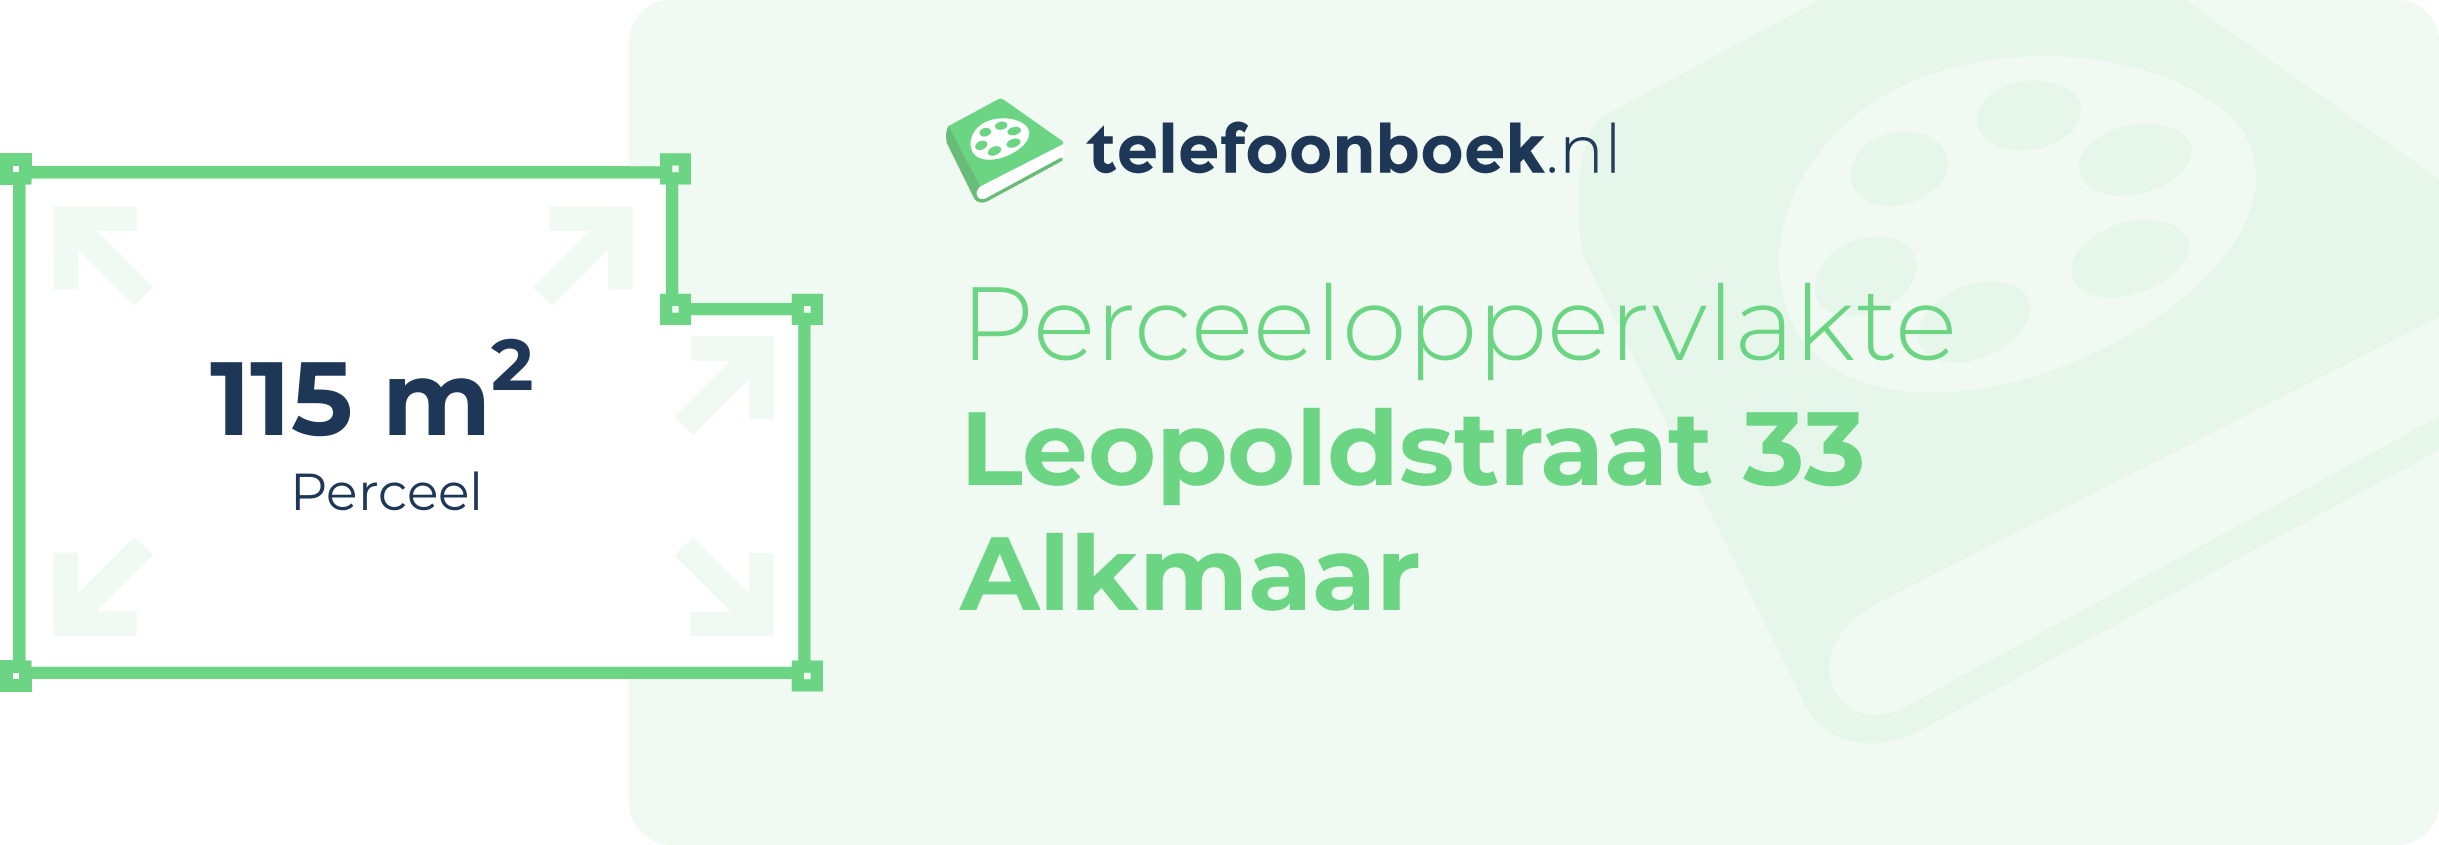 Perceeloppervlakte Leopoldstraat 33 Alkmaar